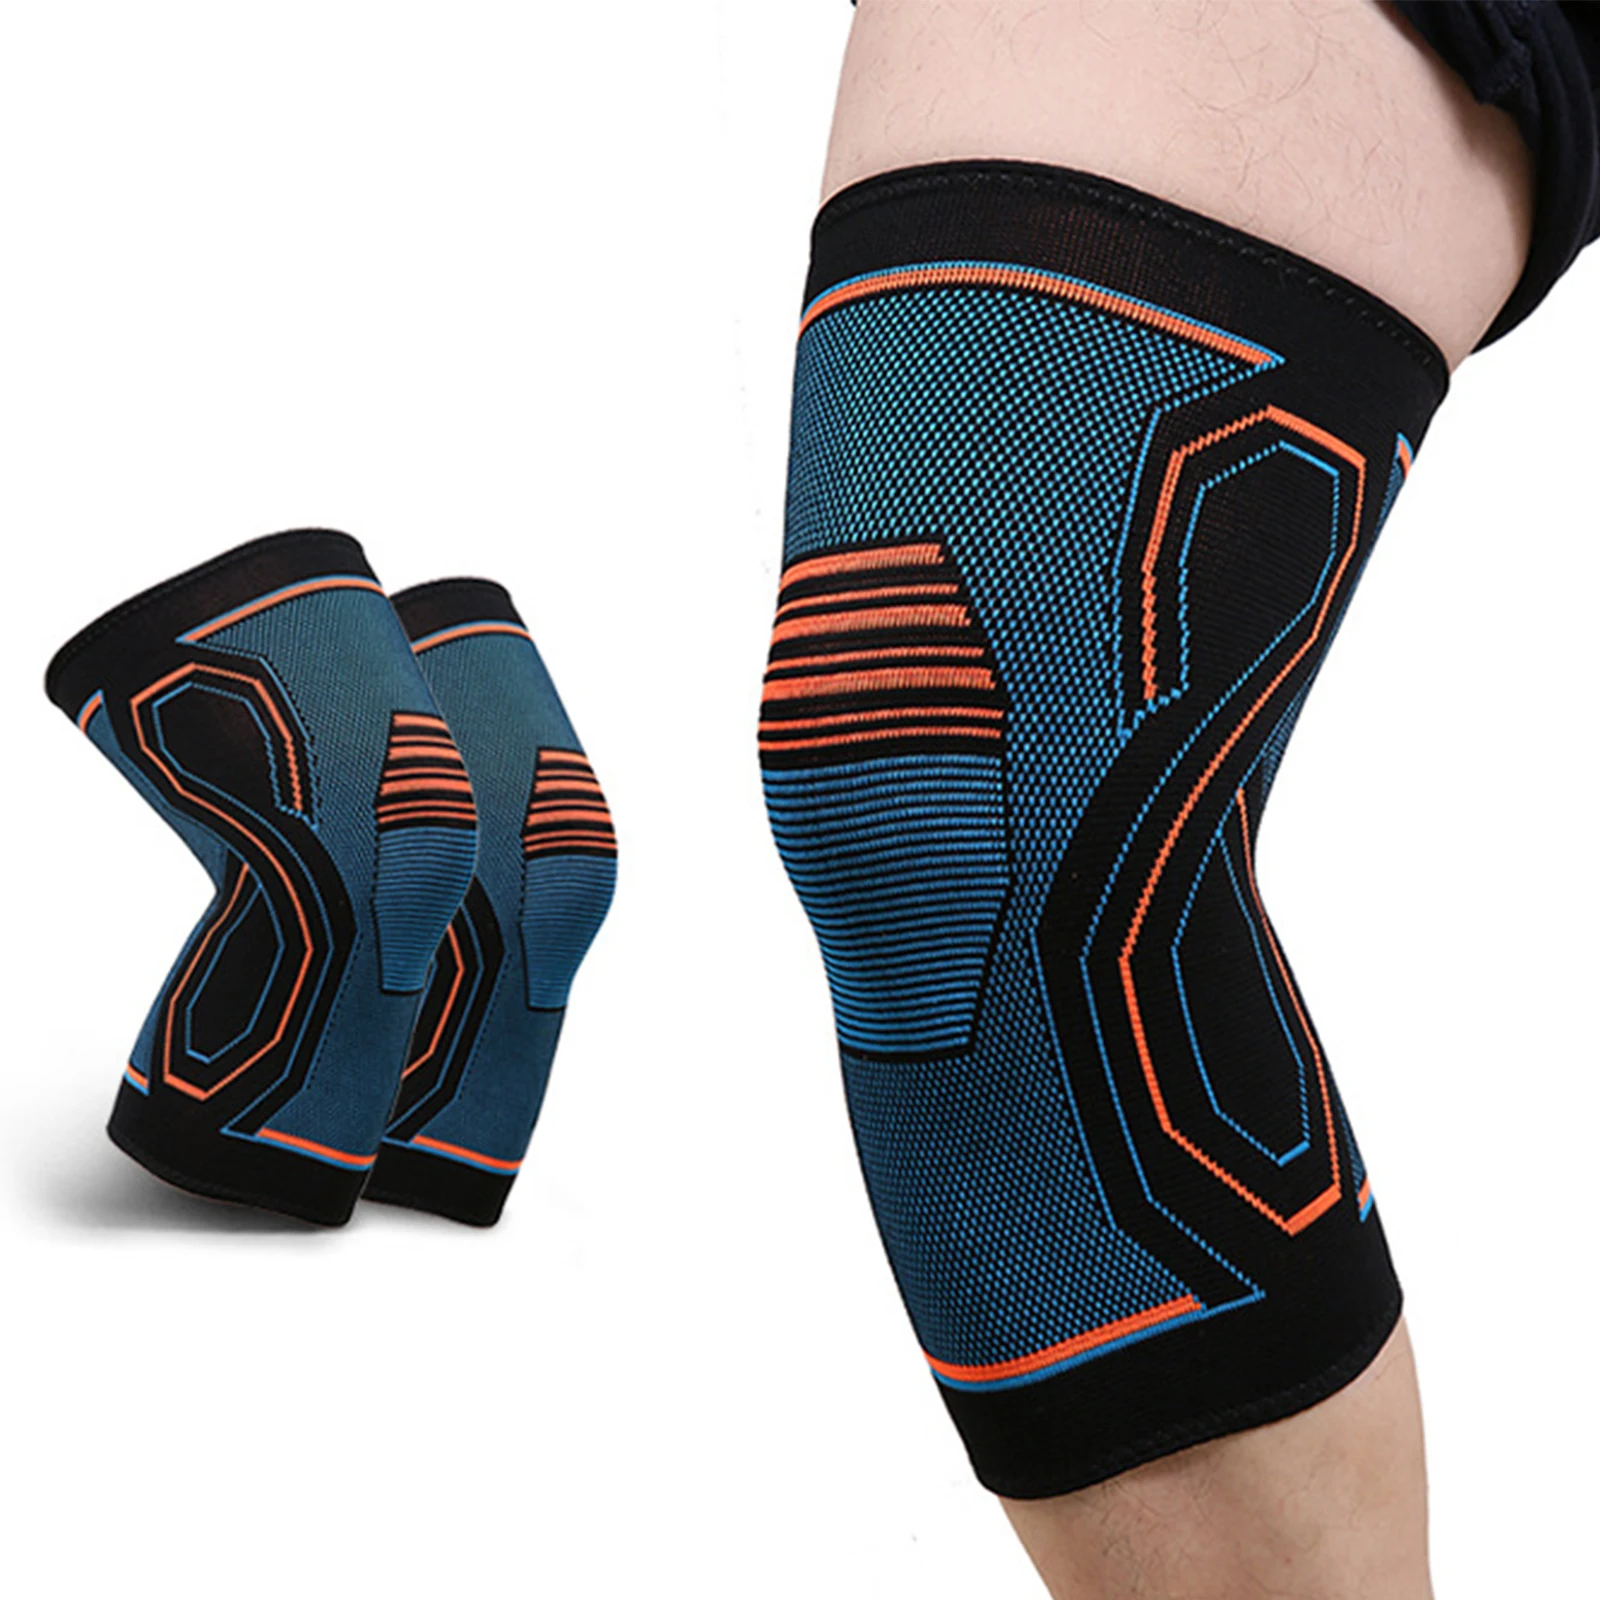 

Компрессионный бандаж на колено, поддержка колена для тренировок, облегчение боли в суставах, бег, езда на велосипеде, баскетбольный вязаны...